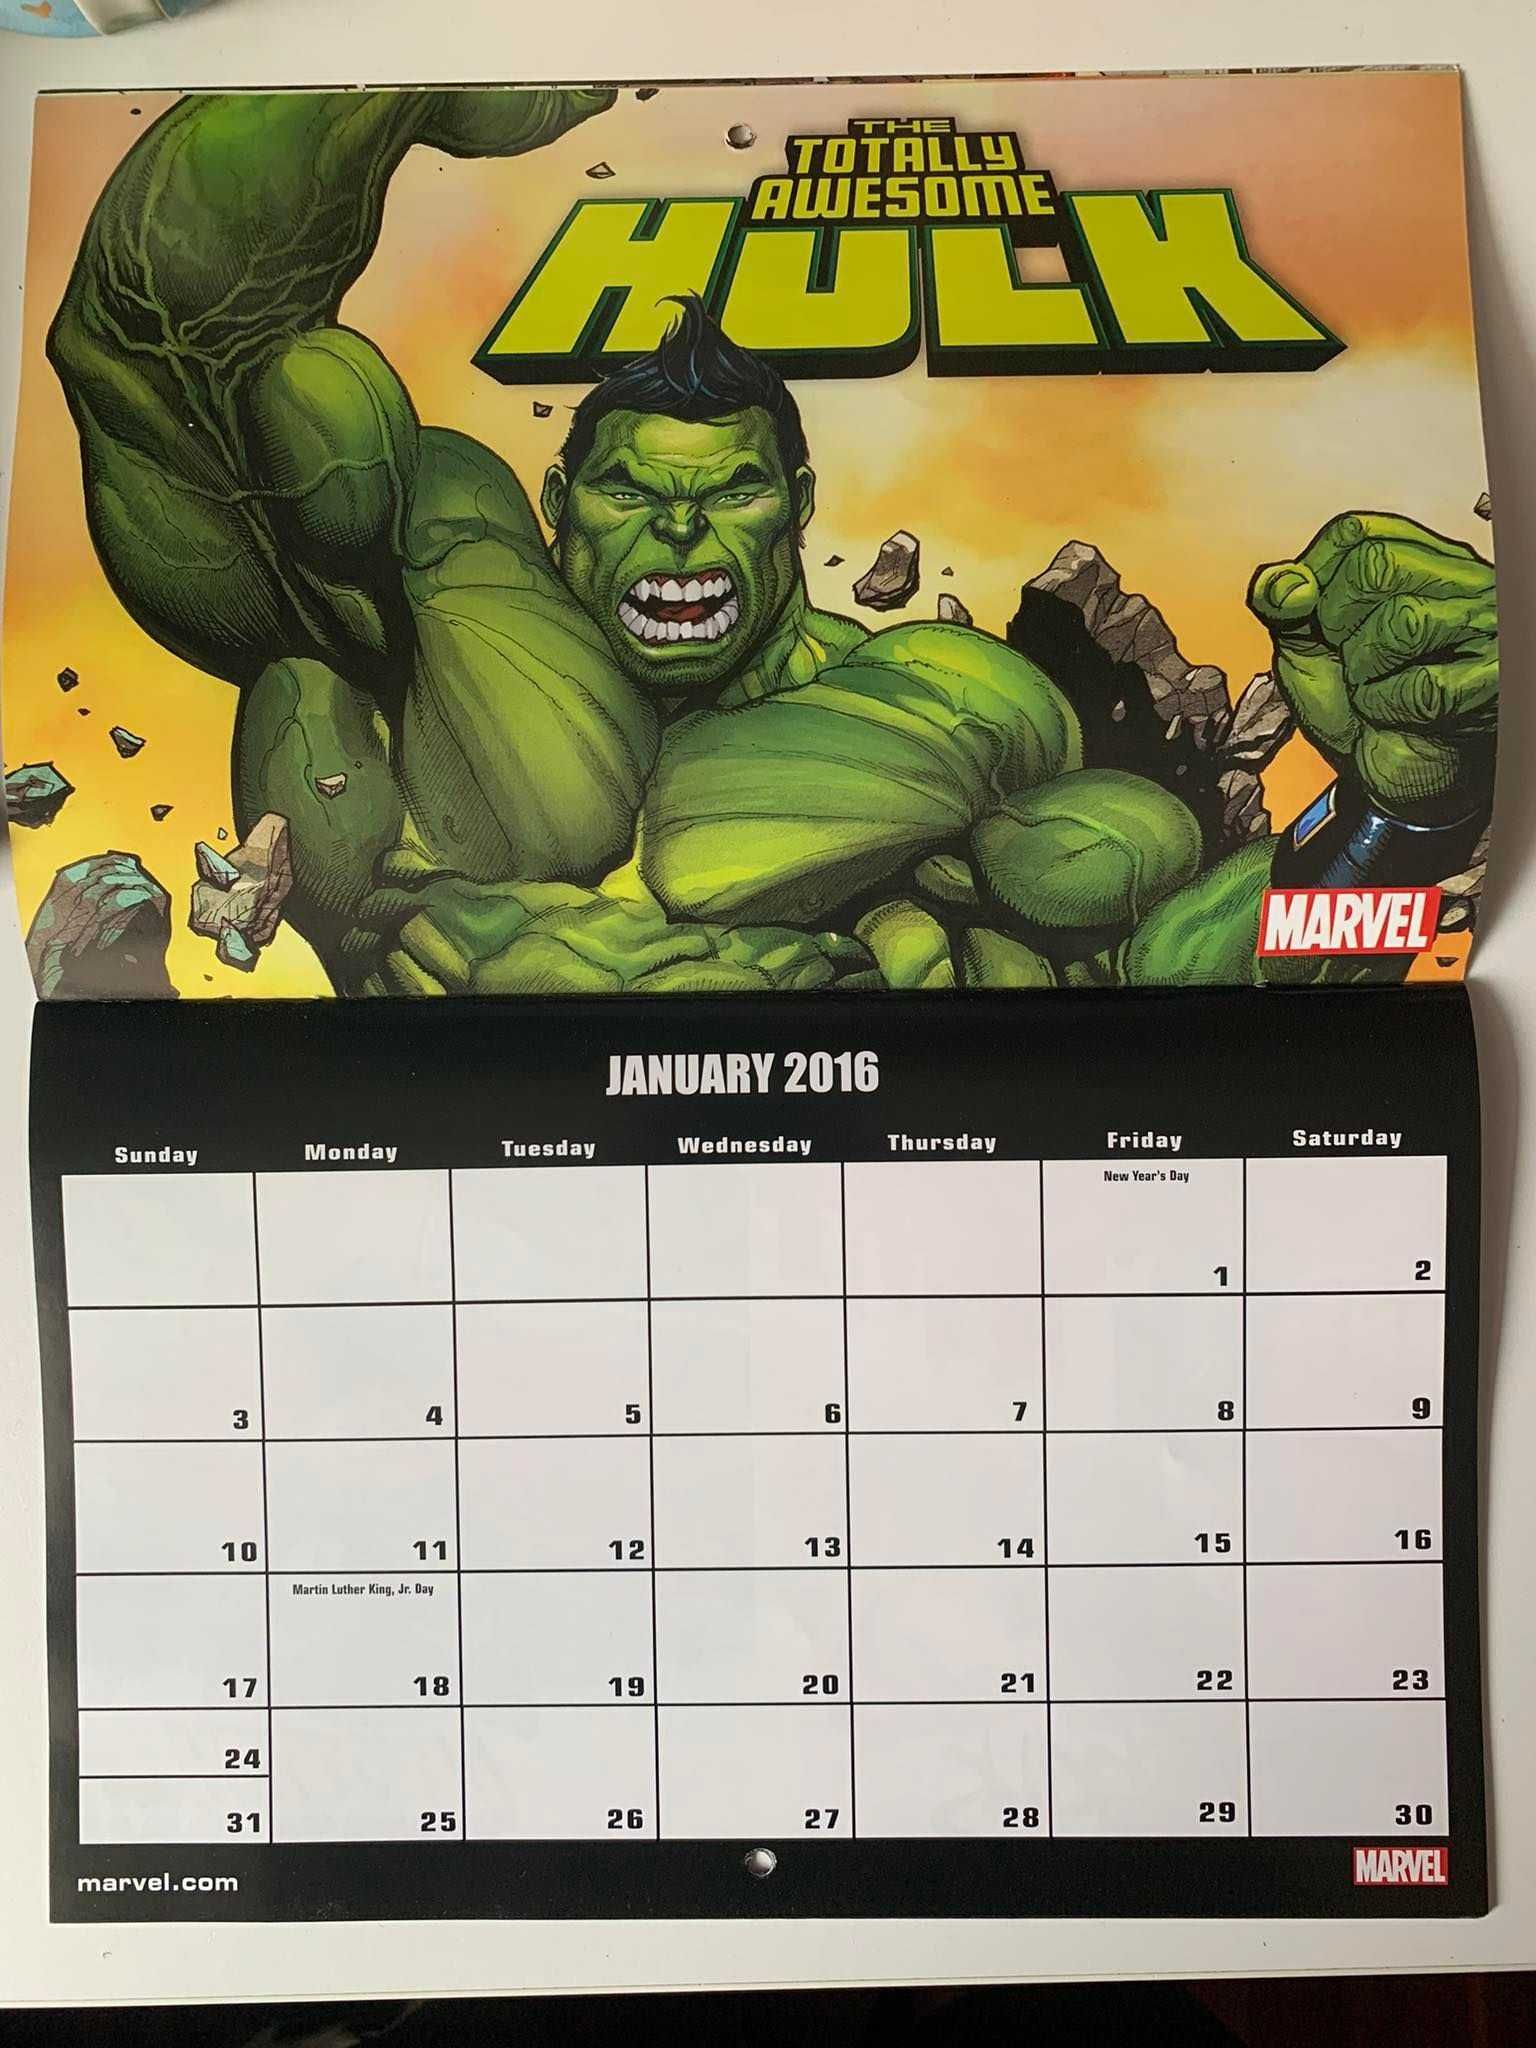 Marvel Calendar 2016 kalendarz 25x17cm